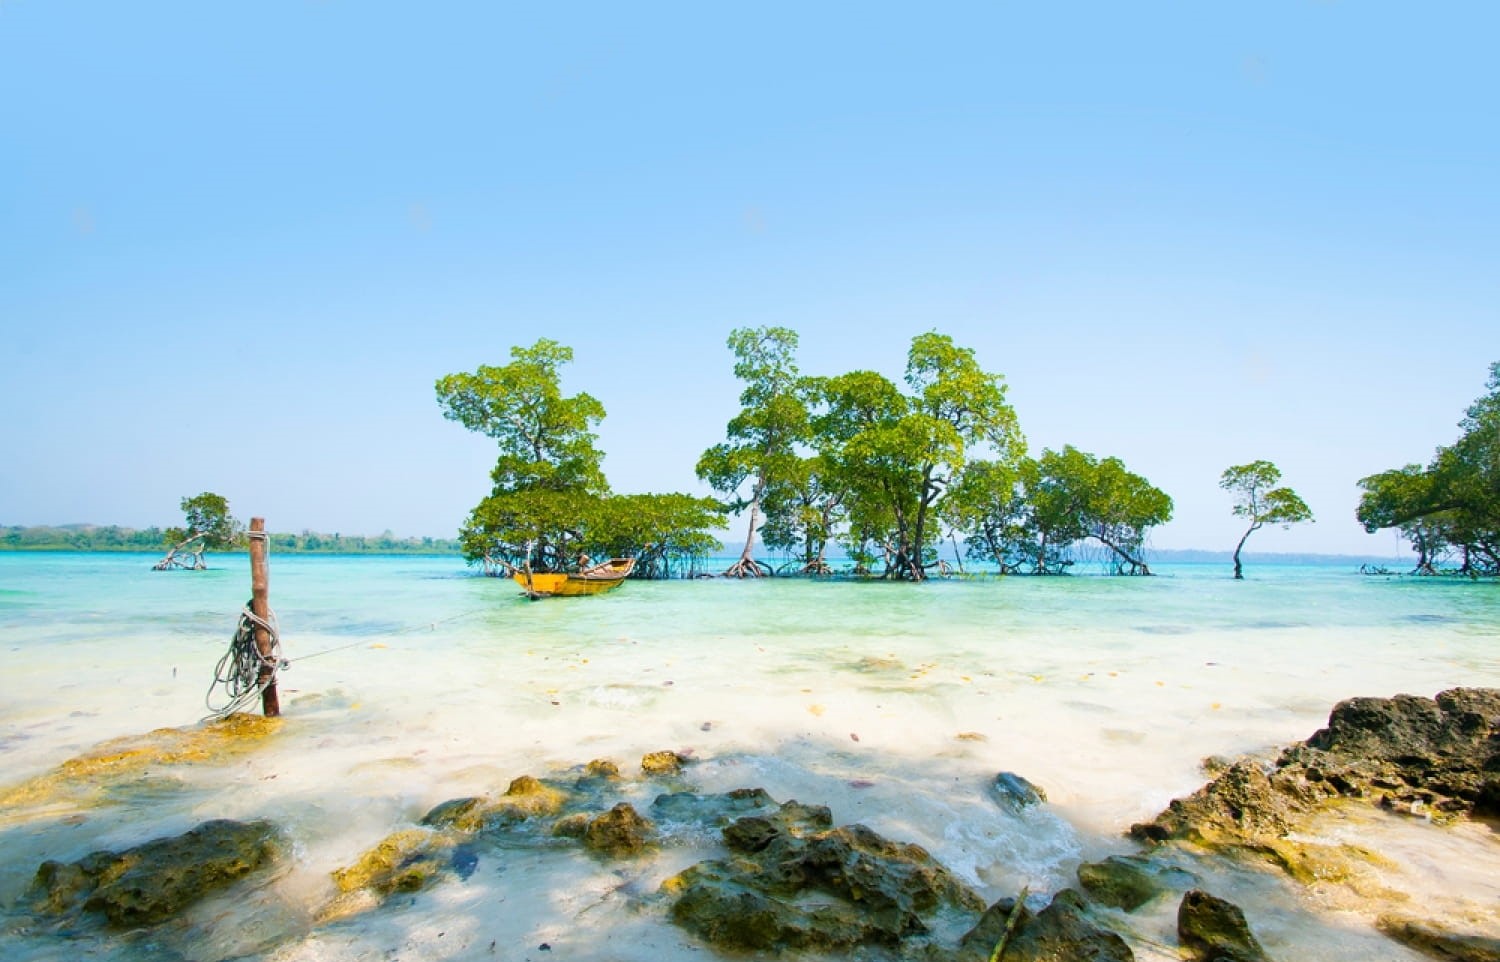 Andaman & Nicobar Islands